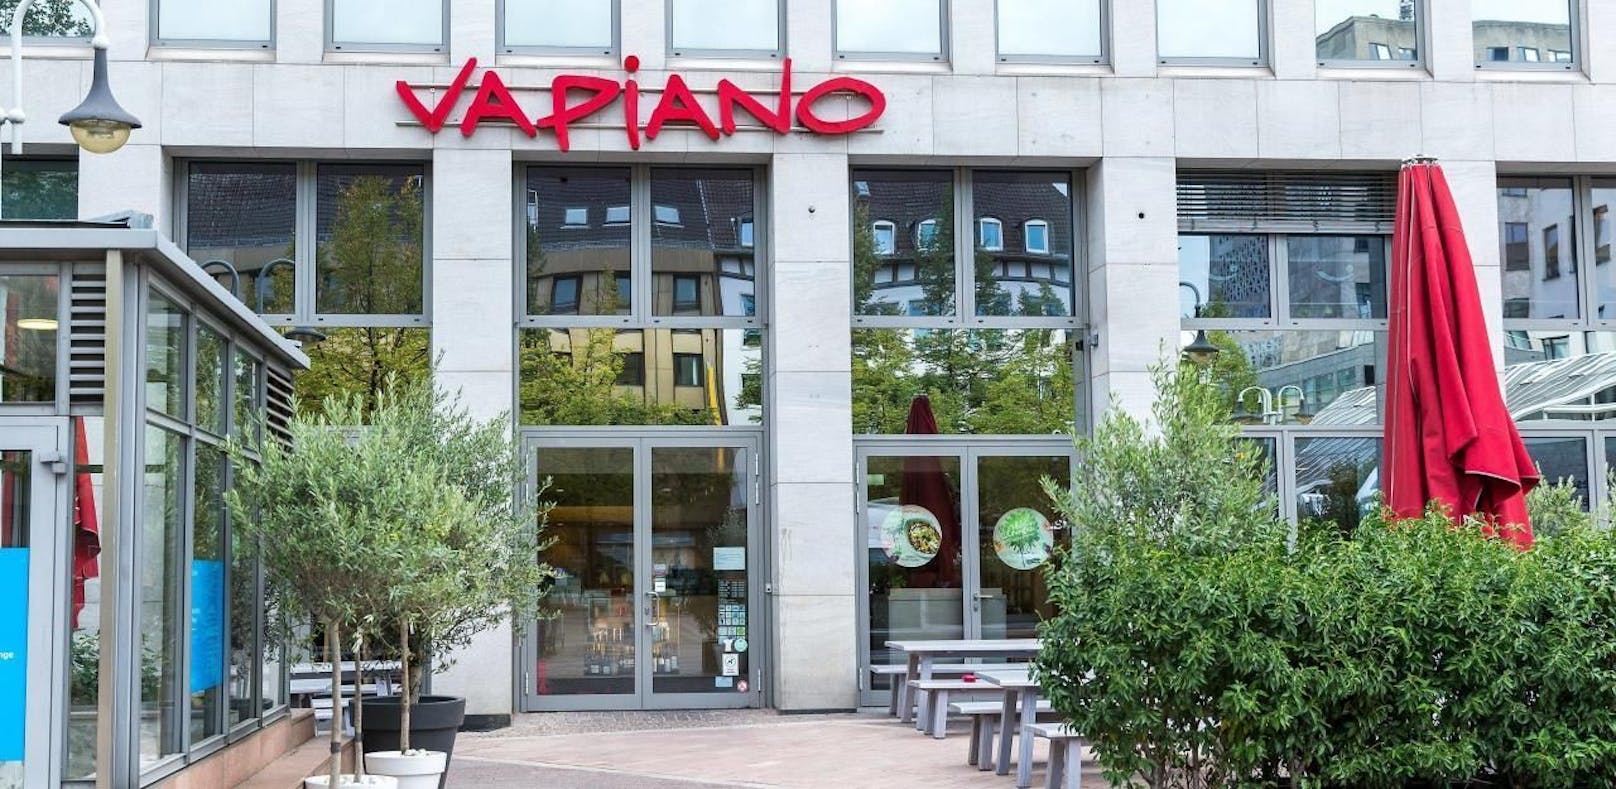 In Restaurants der Kette werden Speisen italienischer Art nach dem Fast-Casual-Prinzip angeboten. Vapiano wurde 2002 in Hamburg gegründet.